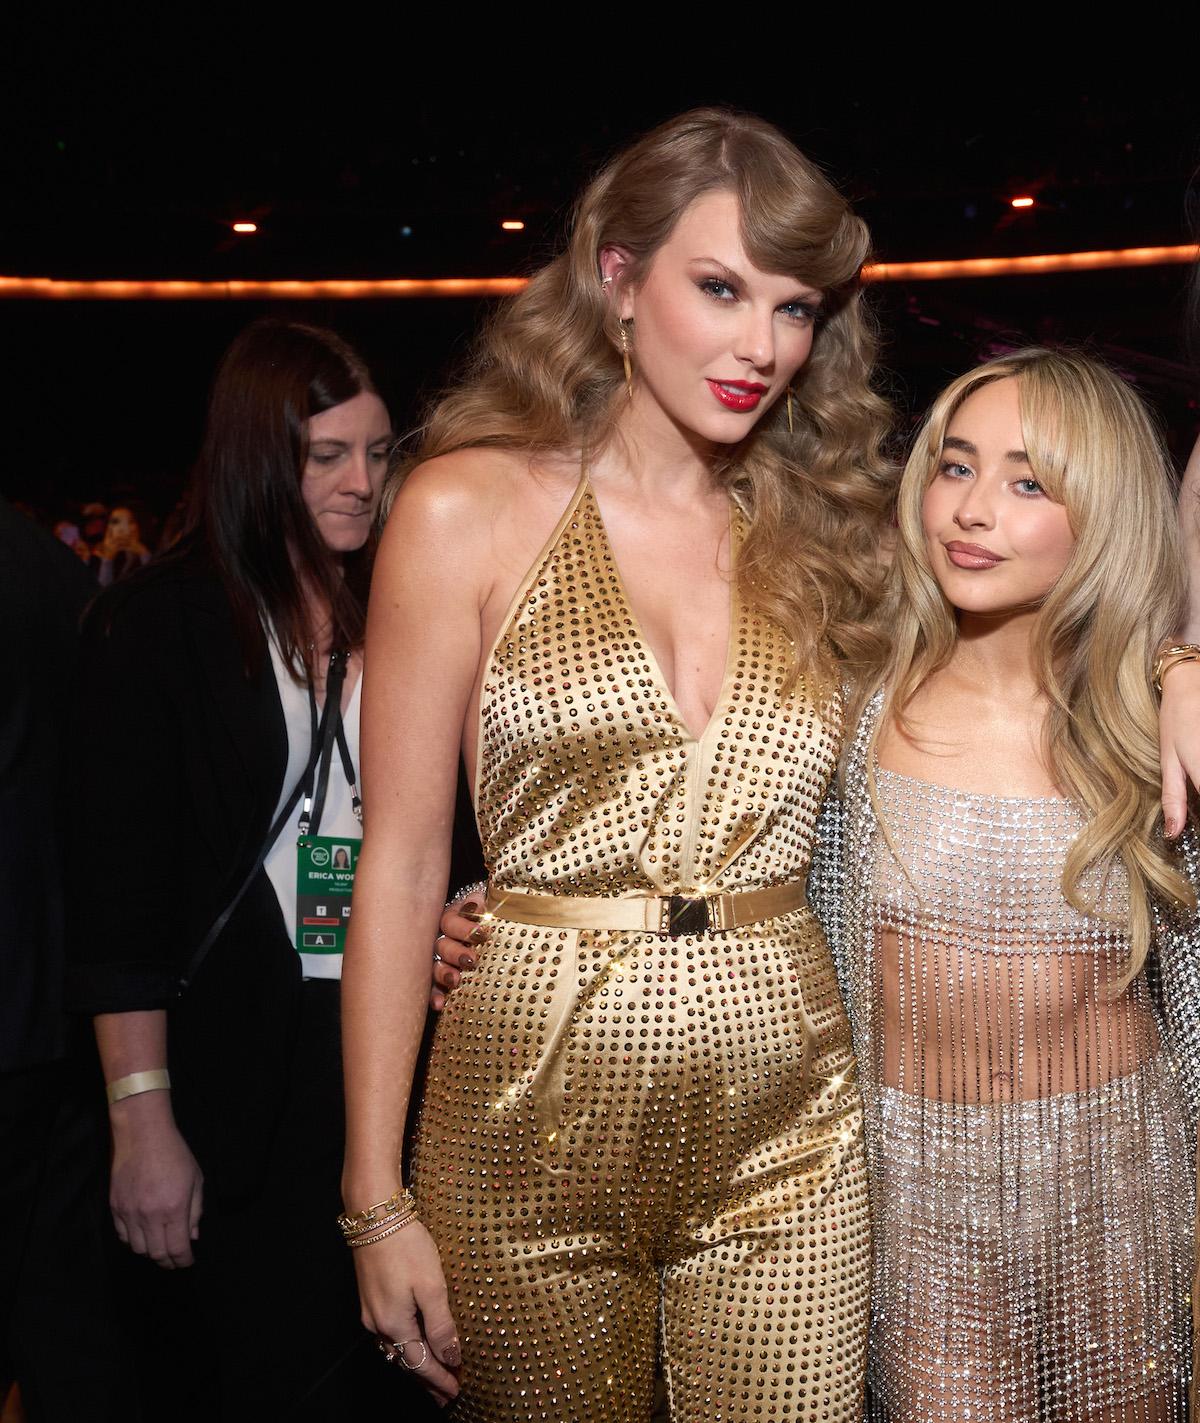   테일러 스위프트(Taylor Swift)와 사브리나 카펜터(Sabrina Carpenter)는 2022년 아메리칸 뮤직 어워드(American Music Awards)에 함께 참석했습니다. 올리비아 로드리고(Olivia Rodrigo)도 이번 시상식에 참석했지만 테일러와는 교류하지 않았습니다.